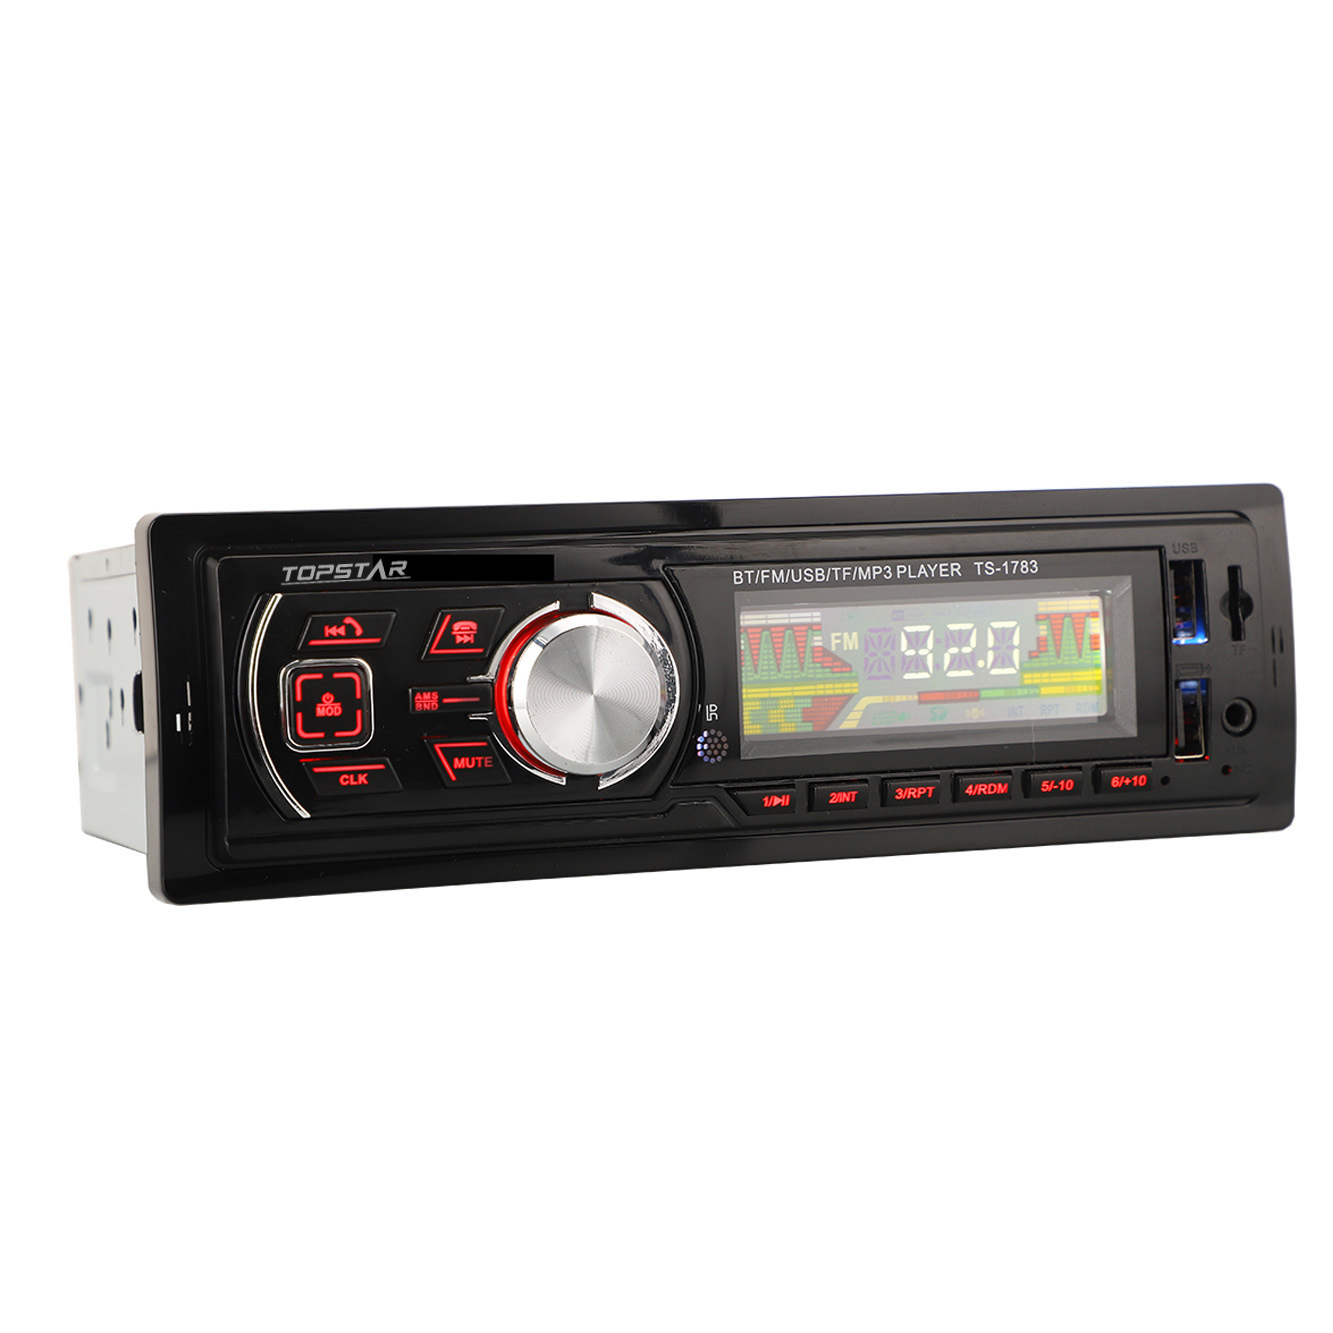 Автомобильный MP3-аудио, авто-аудио, FM-передатчик, аудио, авто-аудио, автомобильная стереосистема, автомобильная аудиосистема, автомобильные аксессуары, ЖК-дисплей, автомобильный плеер с одним DIN